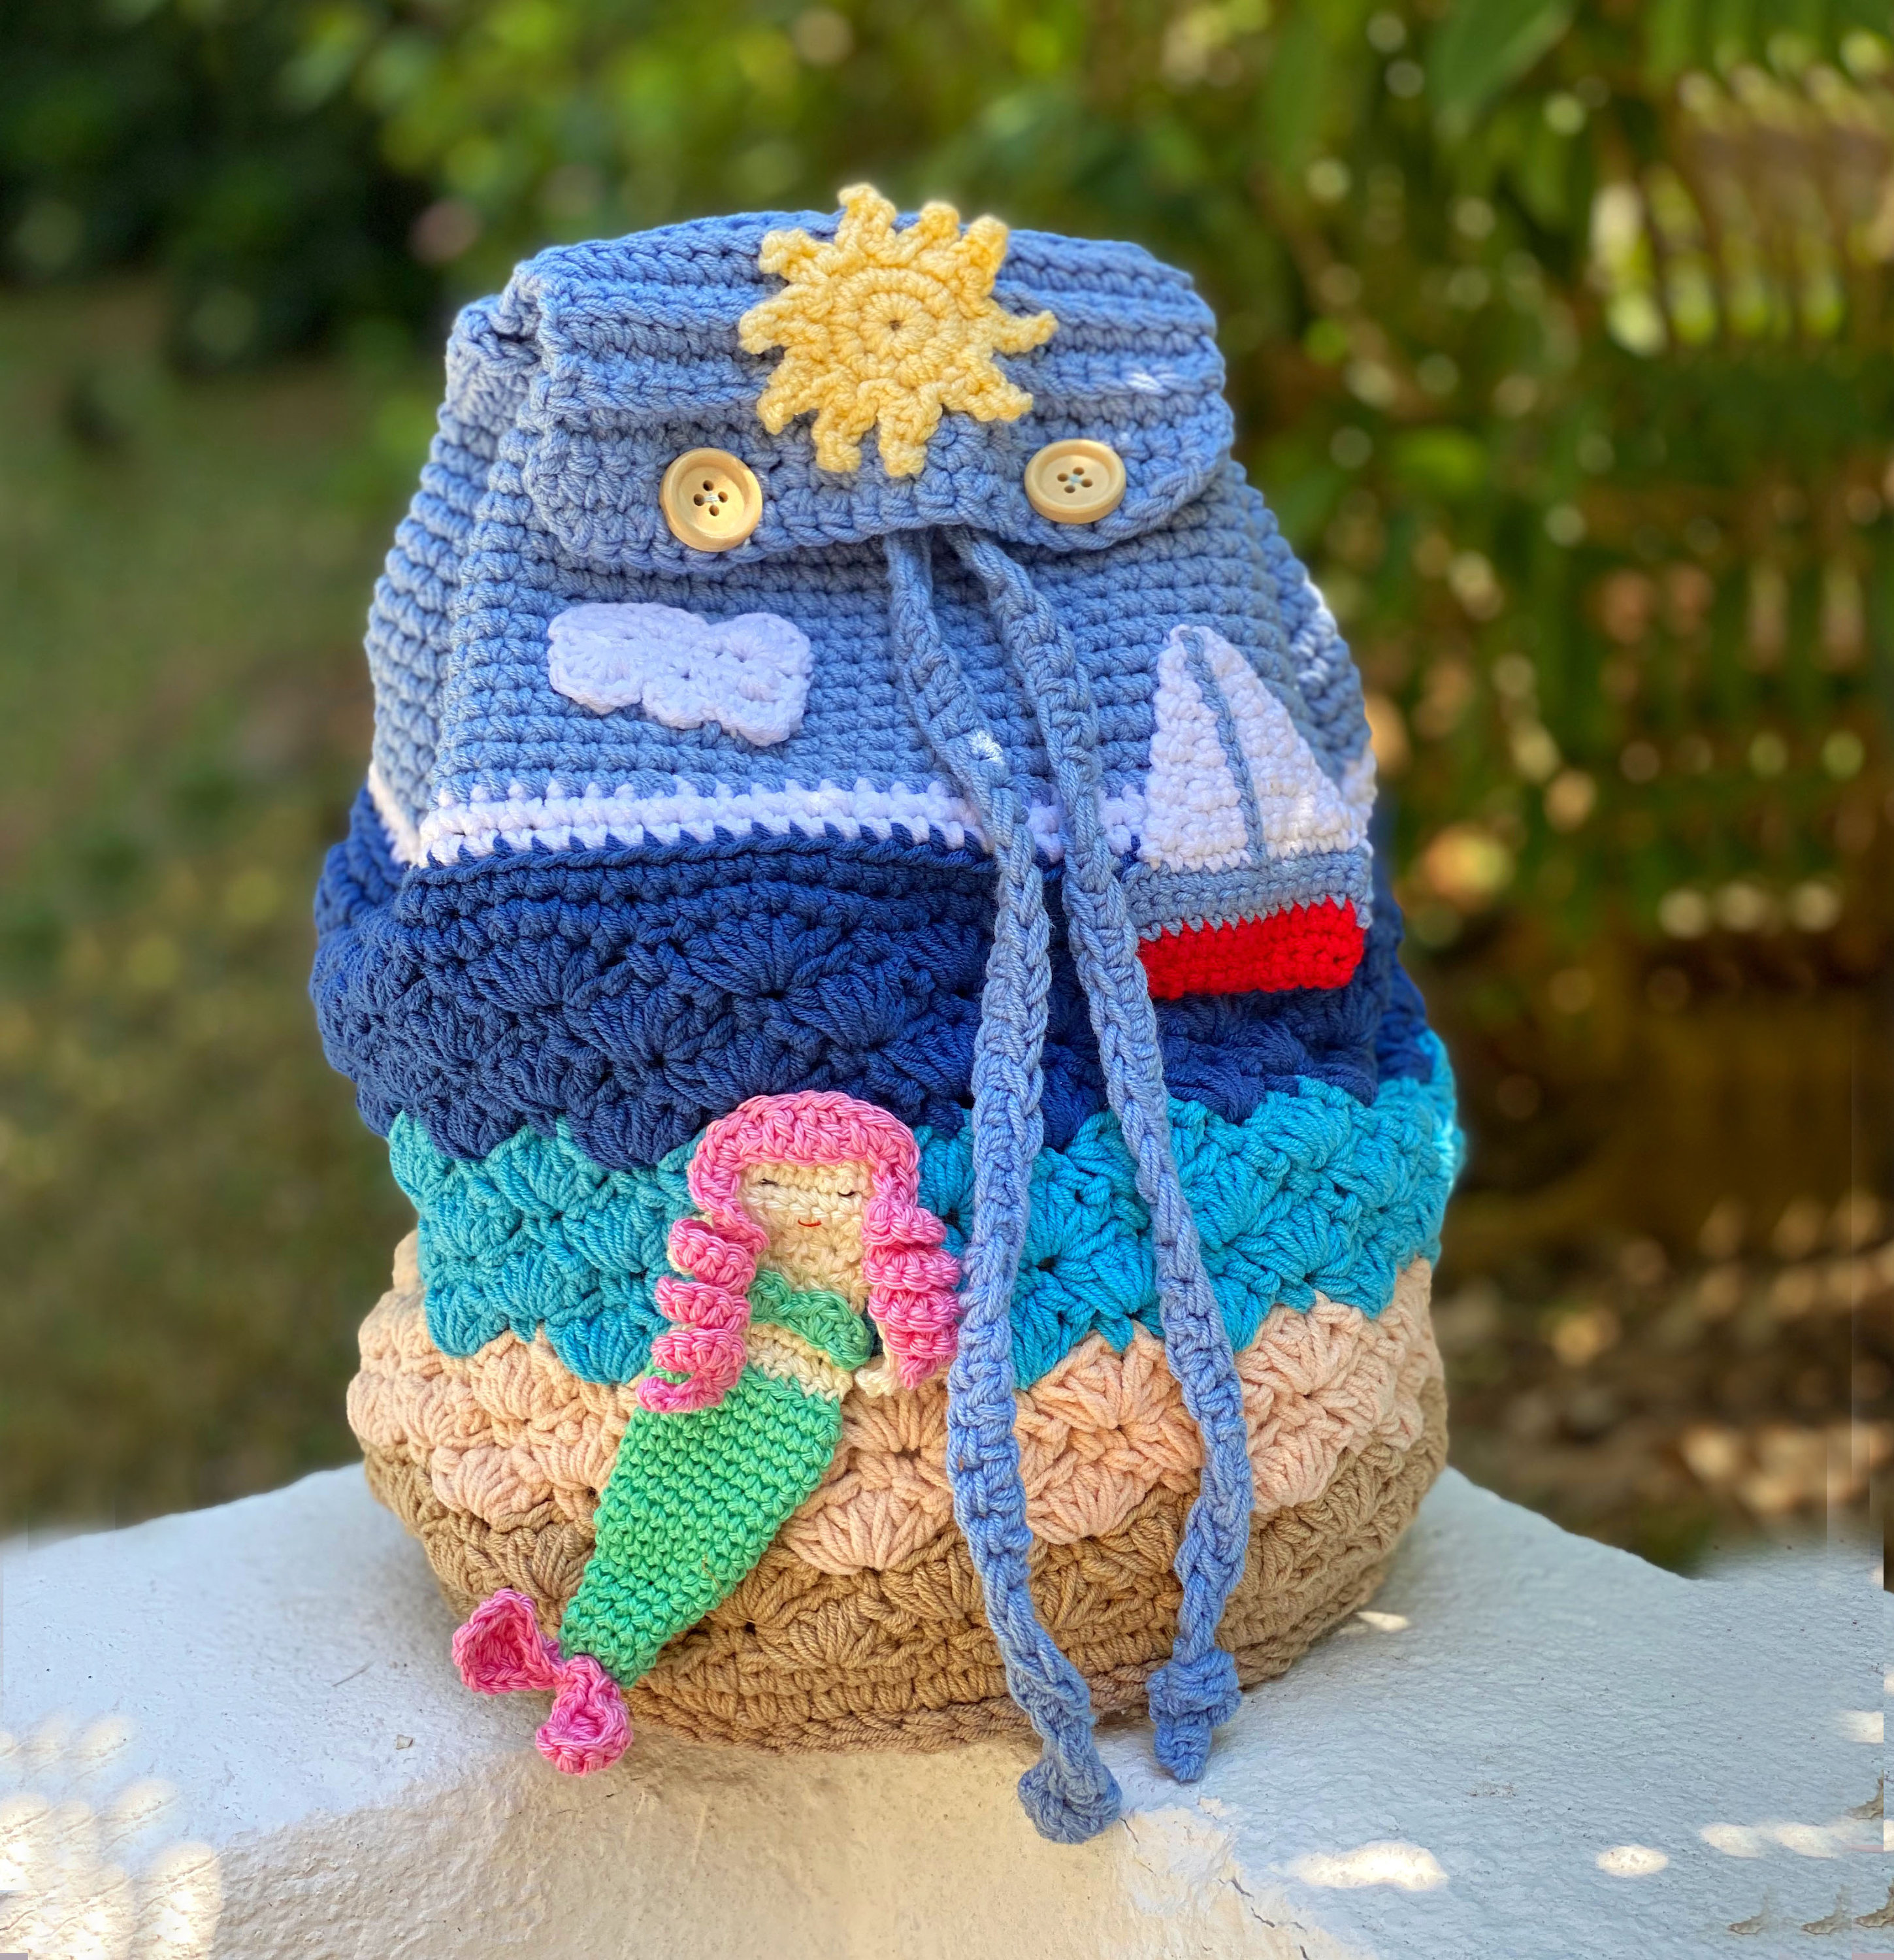 Premium Quality Crochet Todler Backpack / Tshirt Yarn Bag / Handmade Bag  for Kids / Crochet Backpack /hand Knitting Backpack 